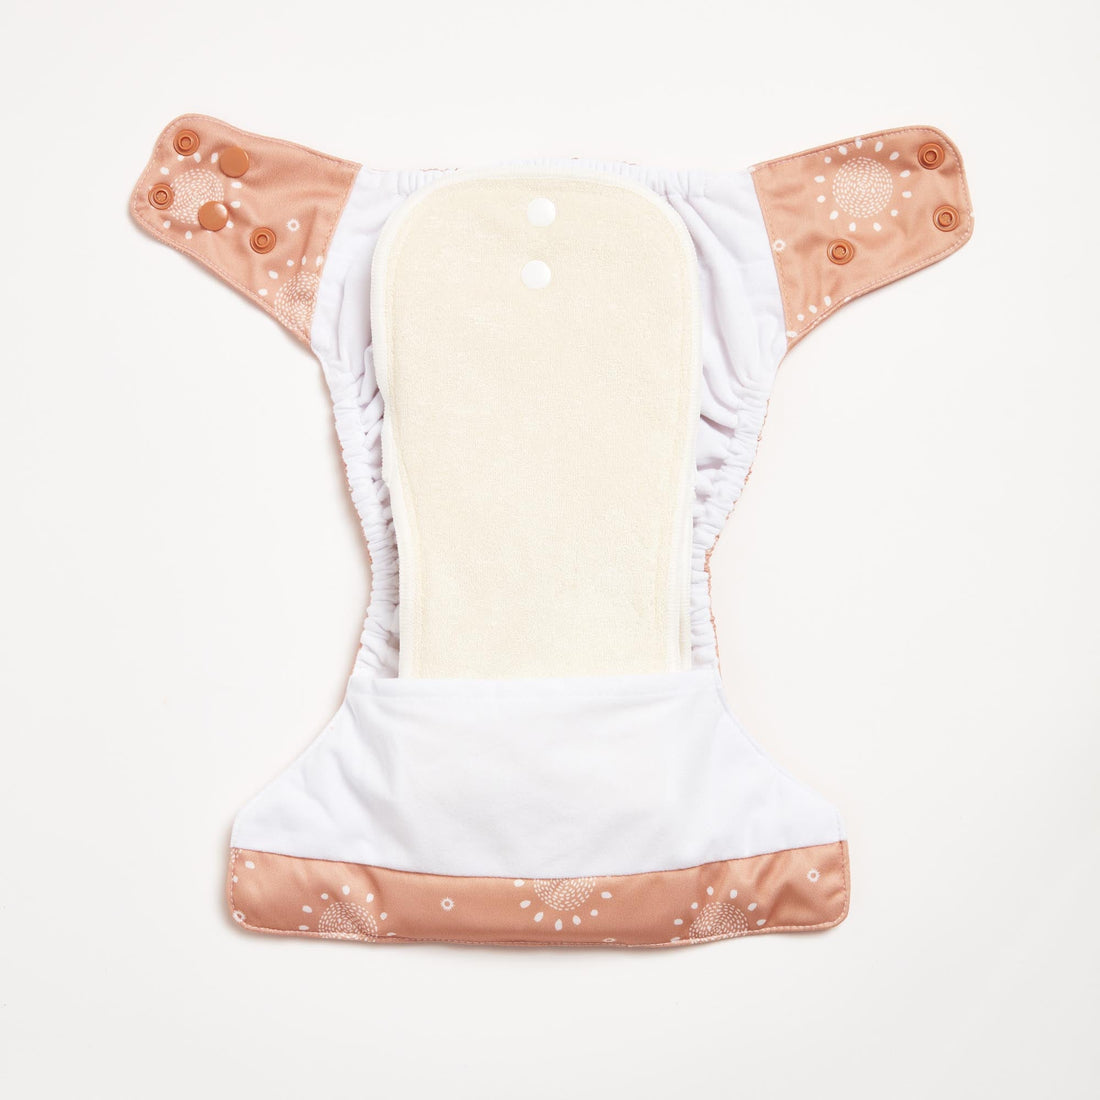 Earth 2.0 Modern Cloth Diaper